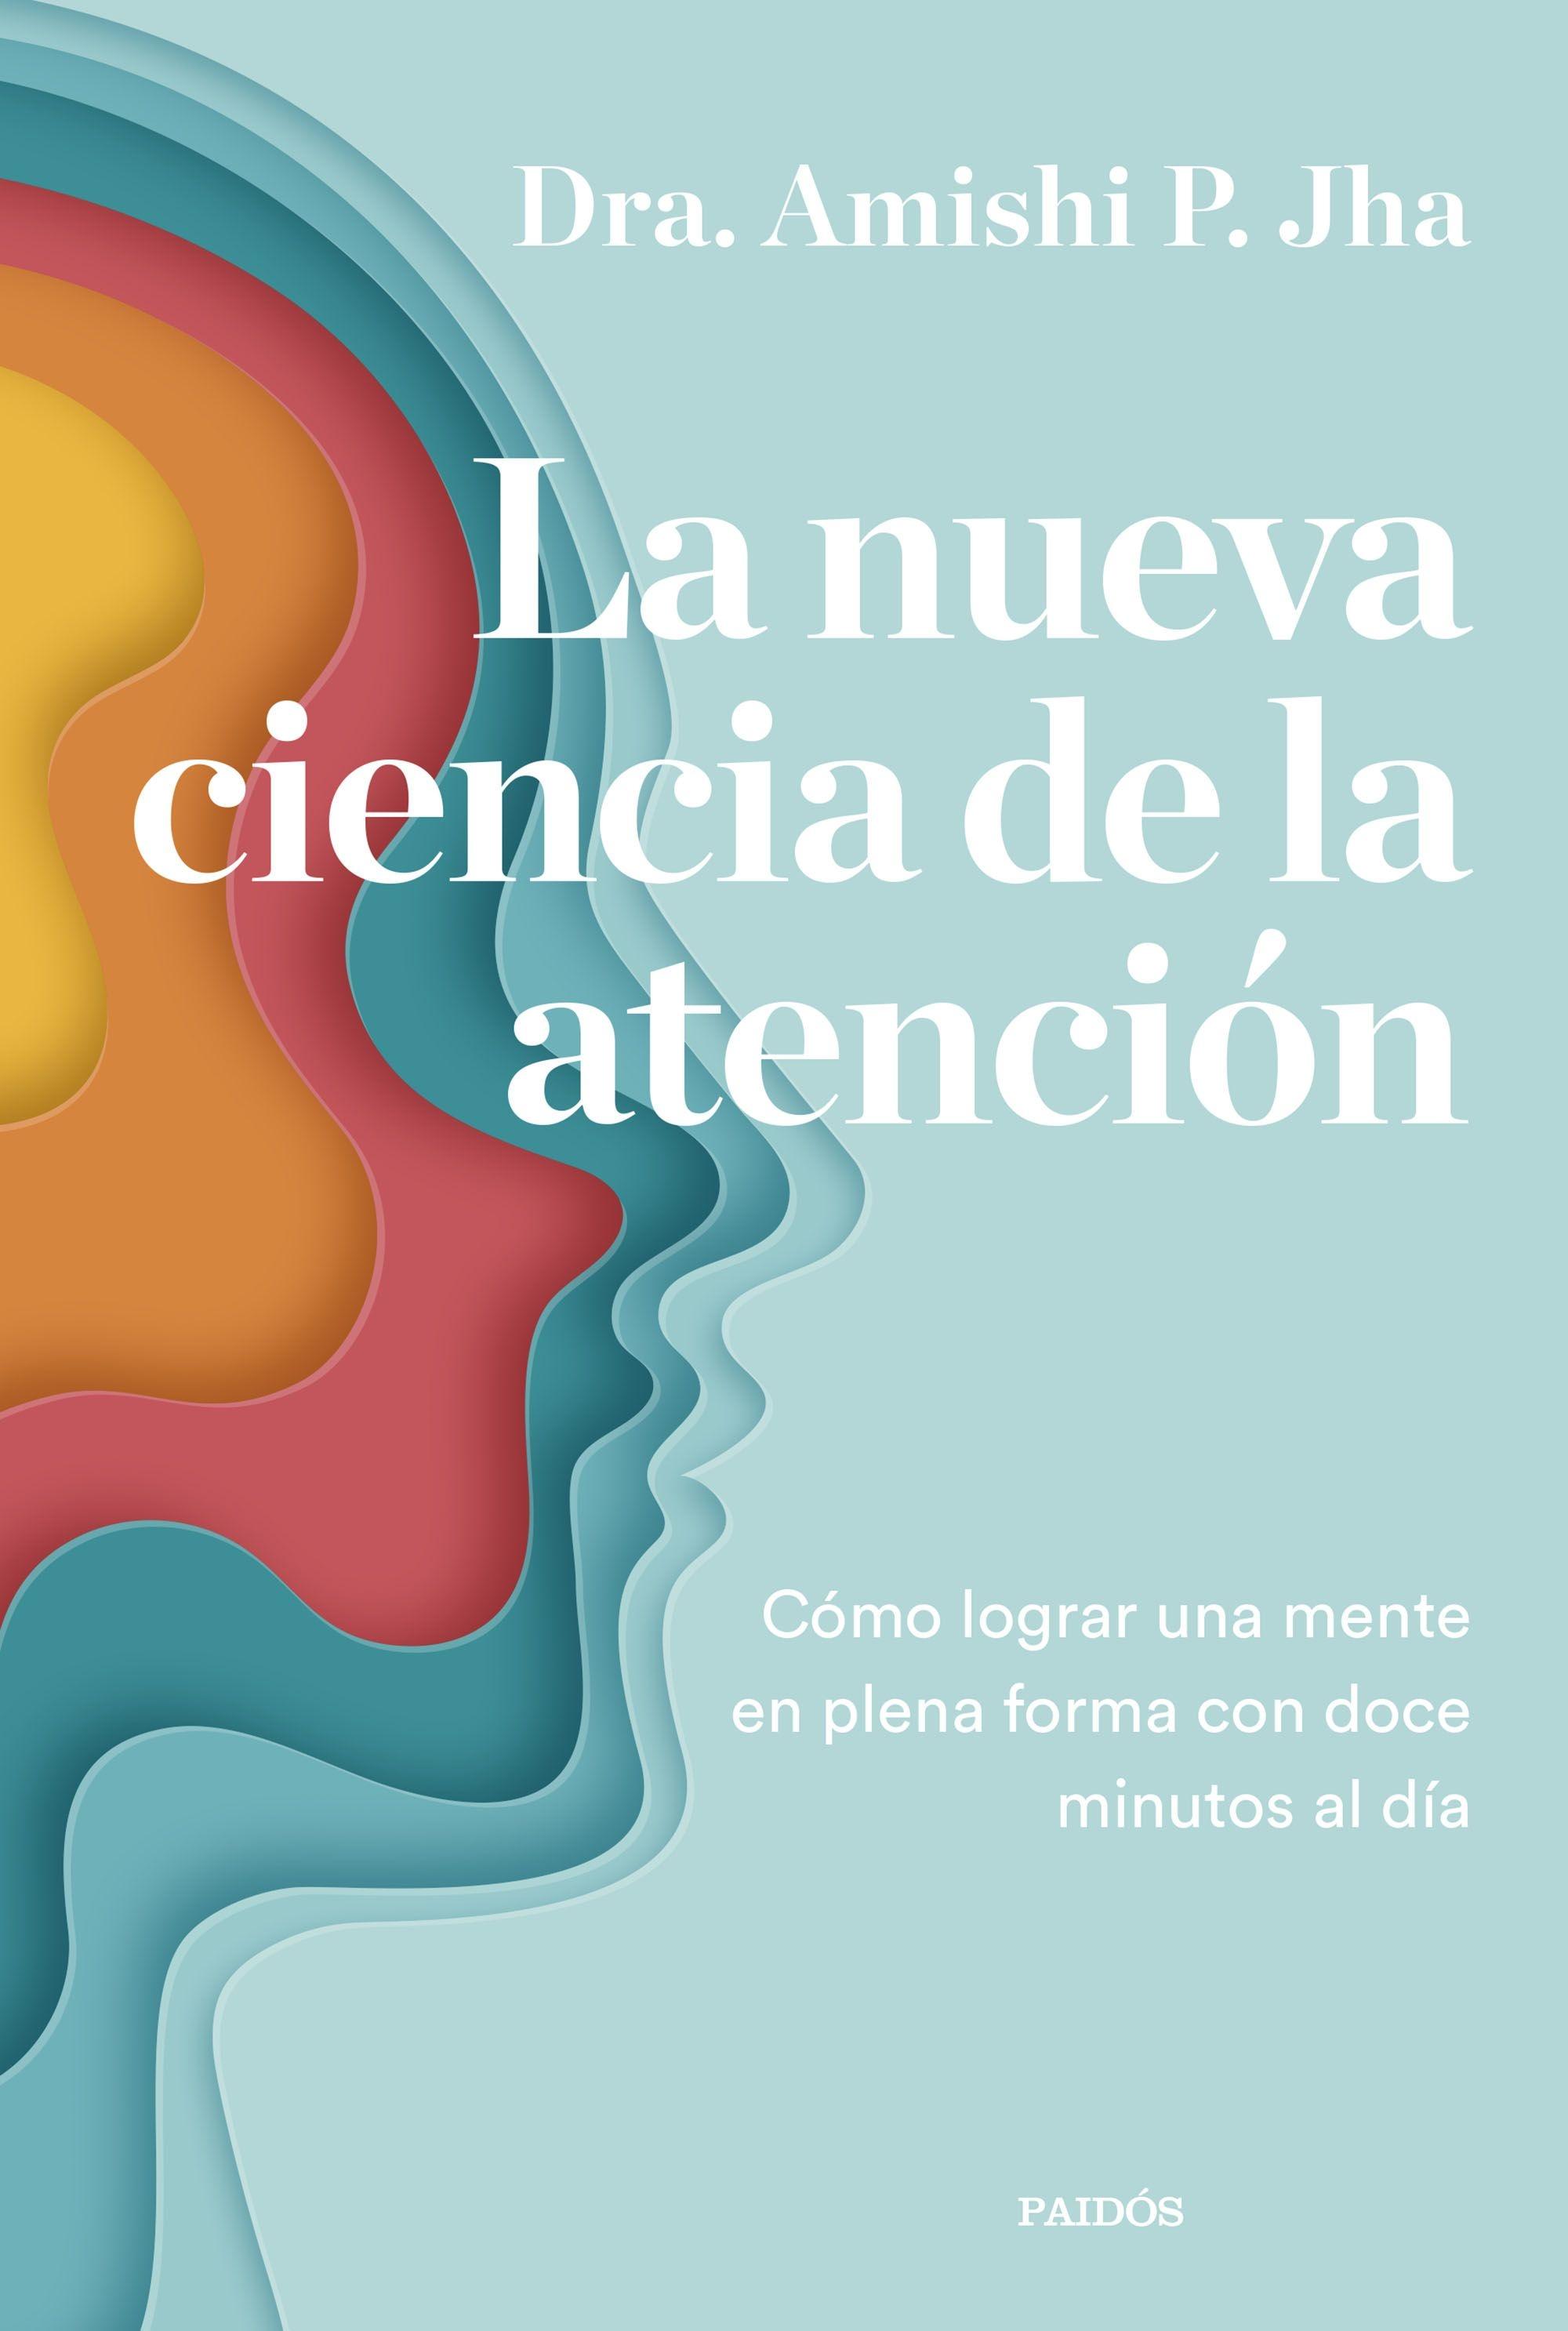 Nueva ciencia de la atención, La "Cómo lograr una mente en plena forma  con doce minutos al día"